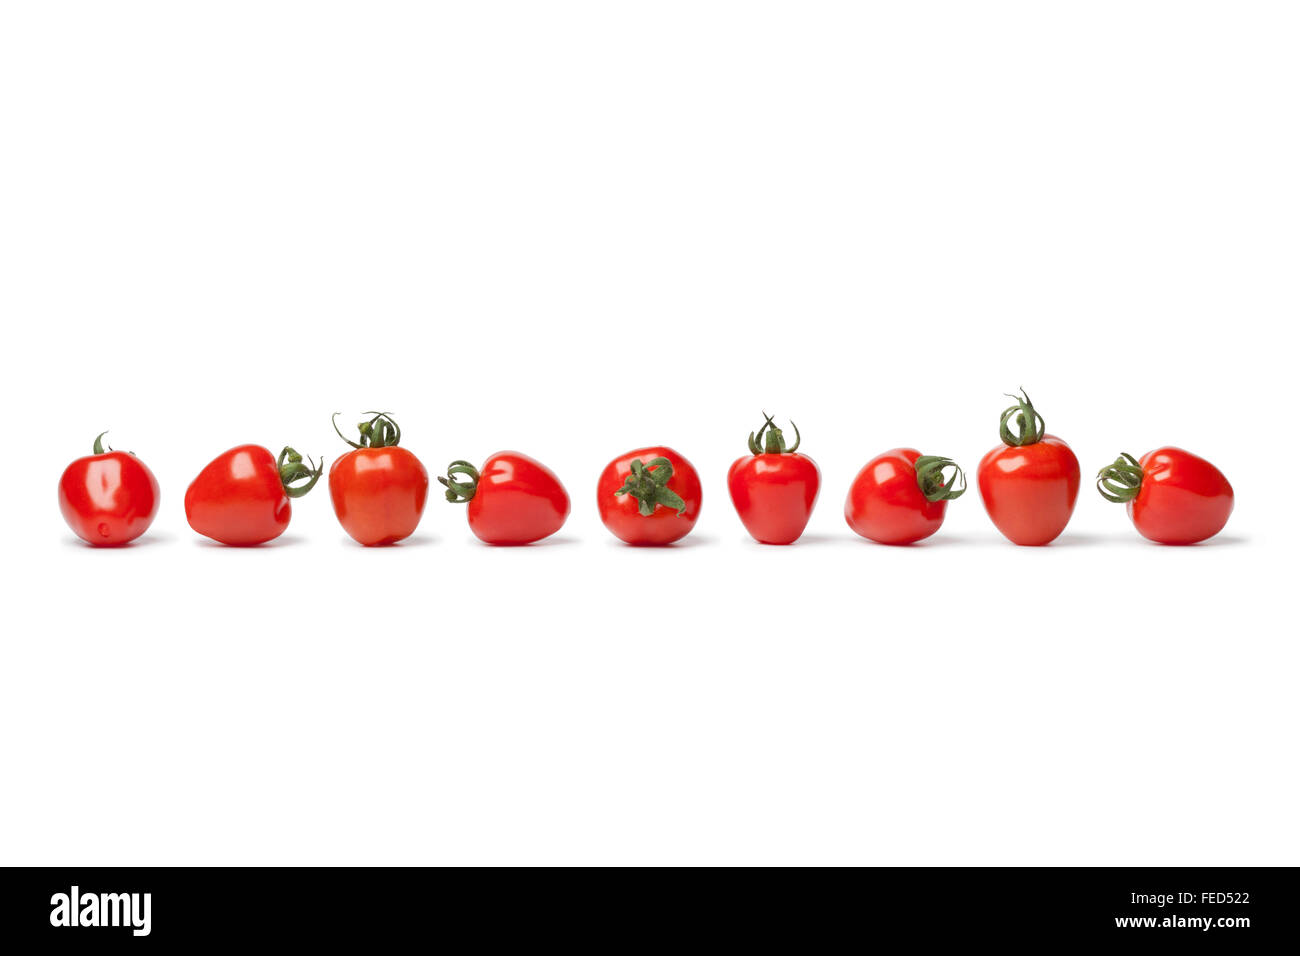 Tomates fraises fraîches dans une rangée sur fond blanc Banque D'Images